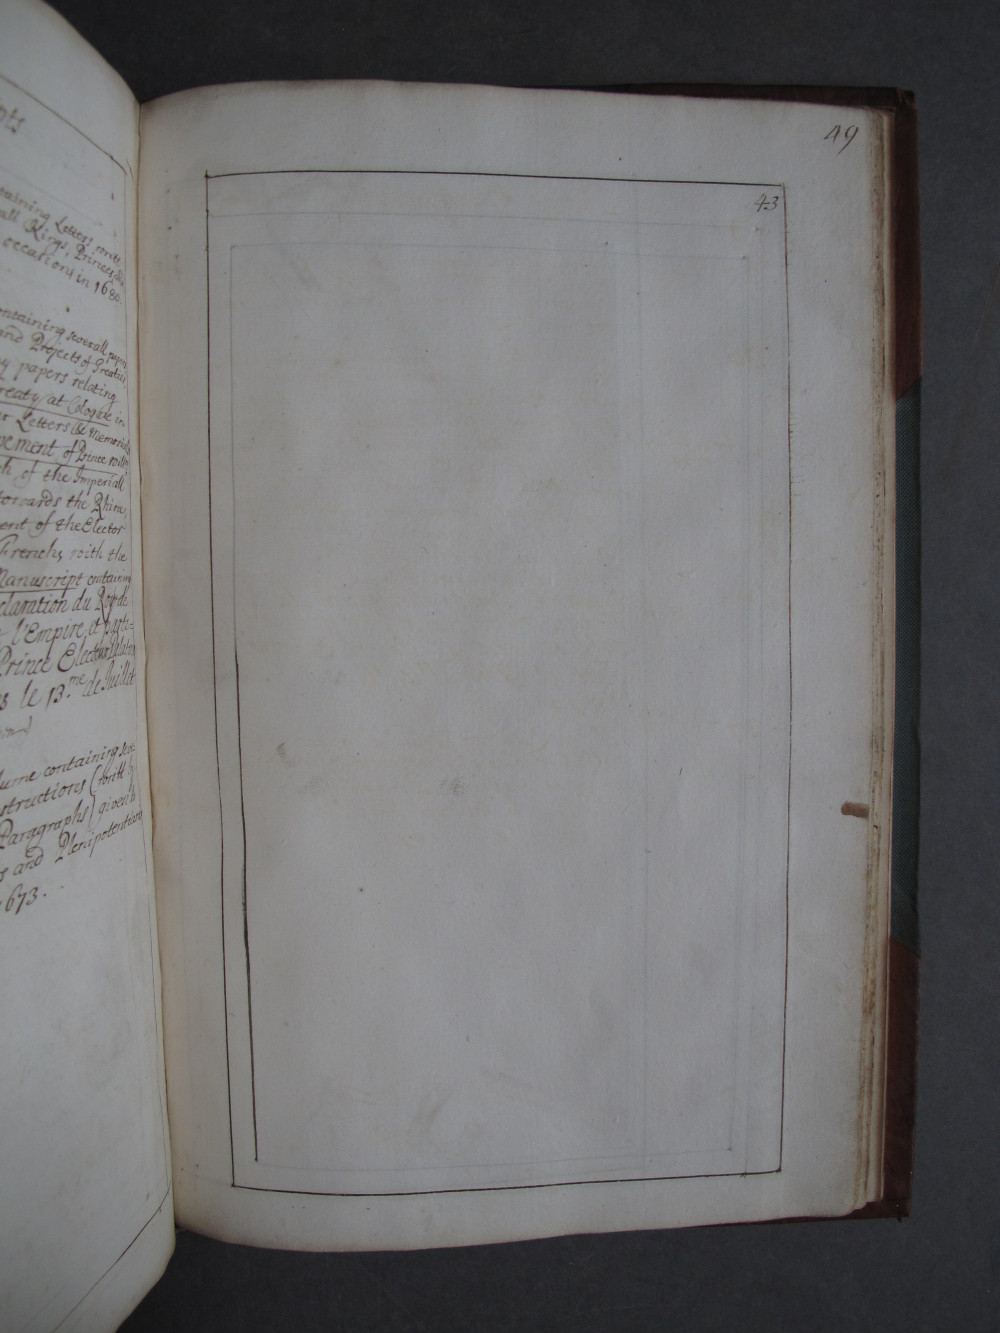 Folio 43 recto